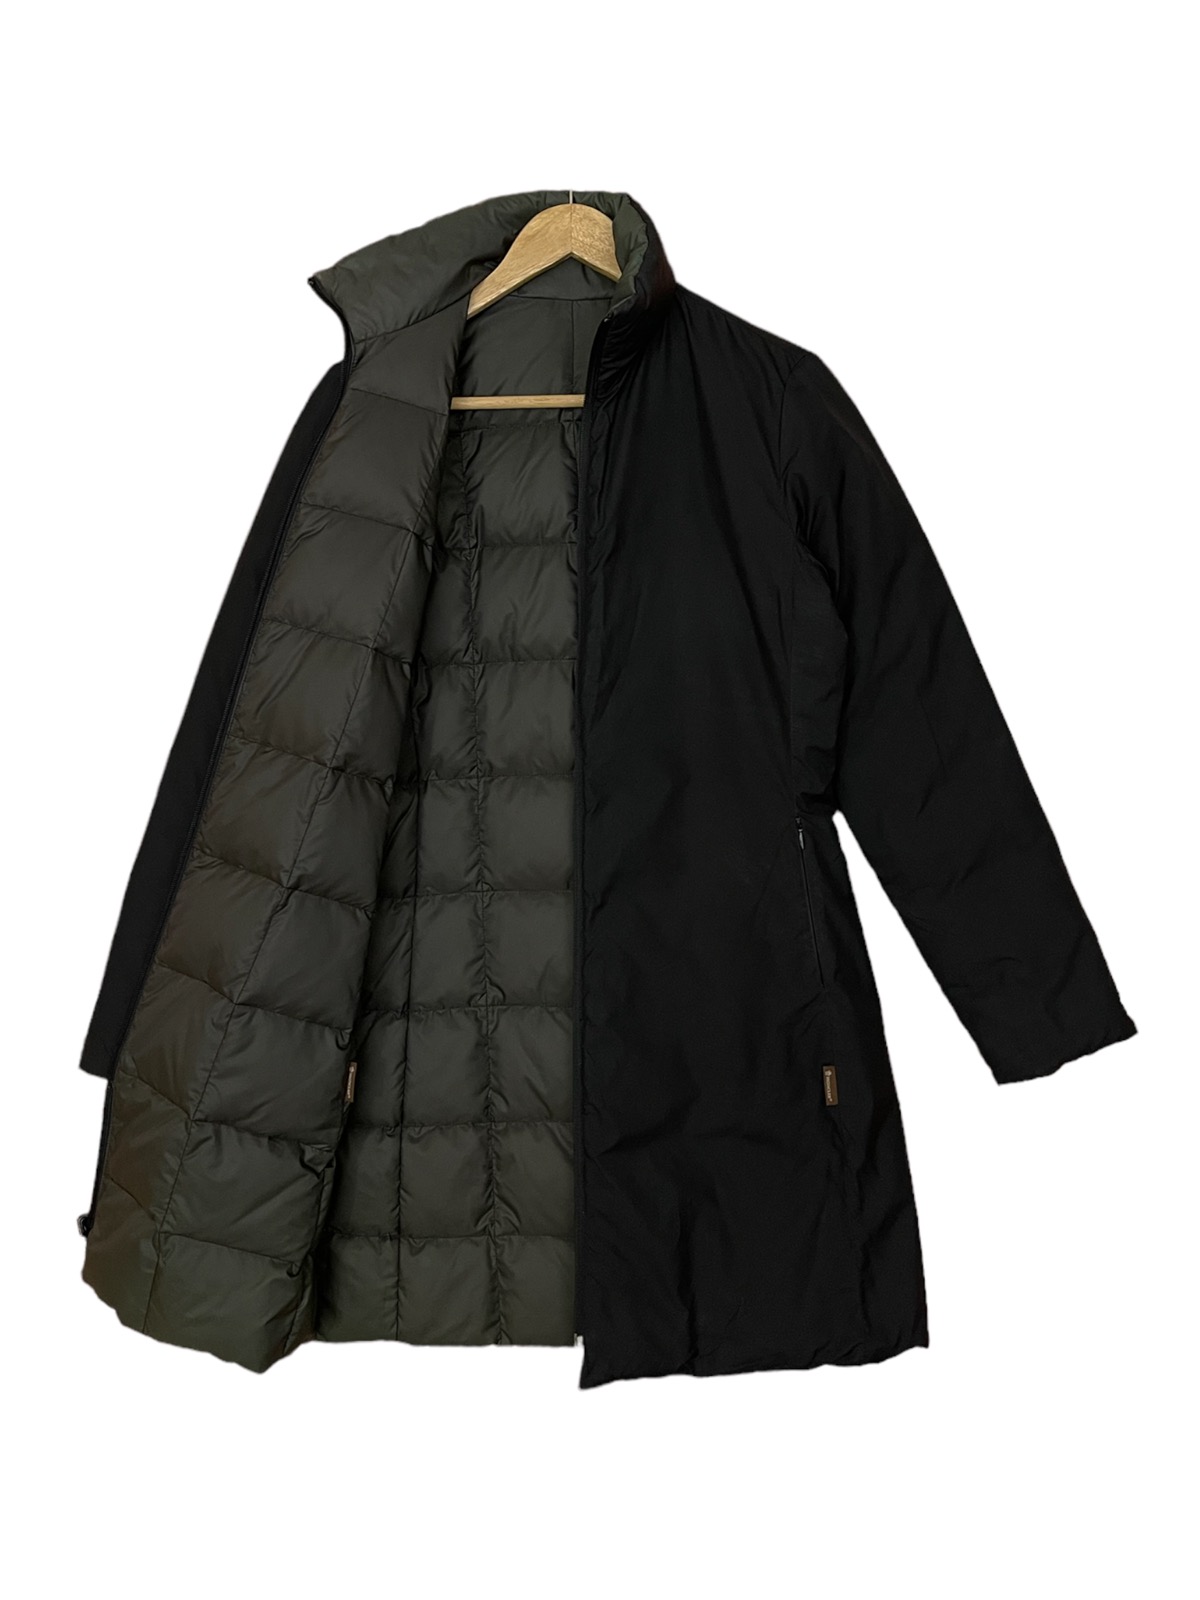 Moncler long puffer jacket reversible down jacket - 7